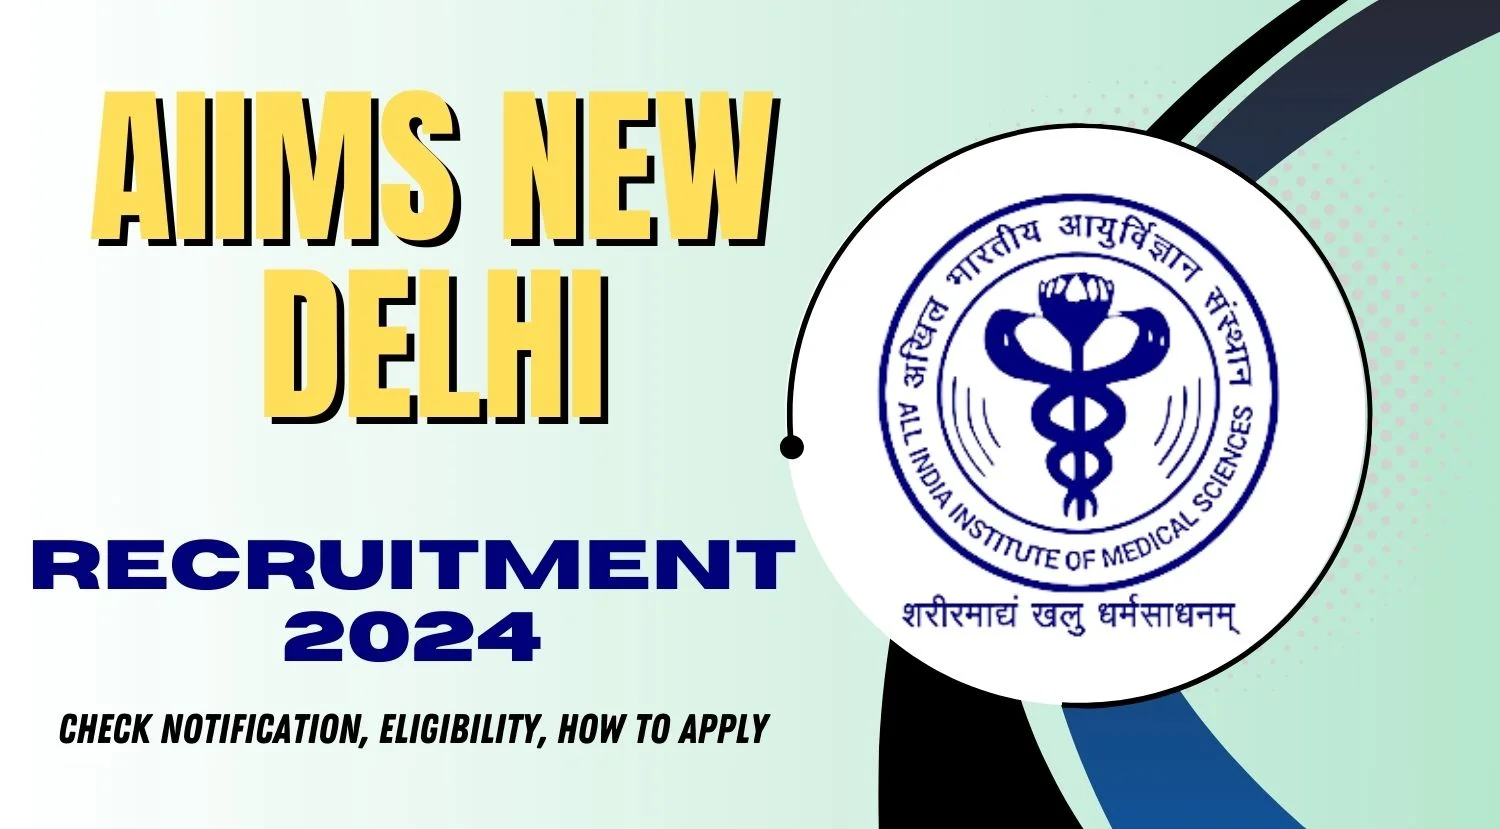 AIIMS New Delhi Recruitment 2024